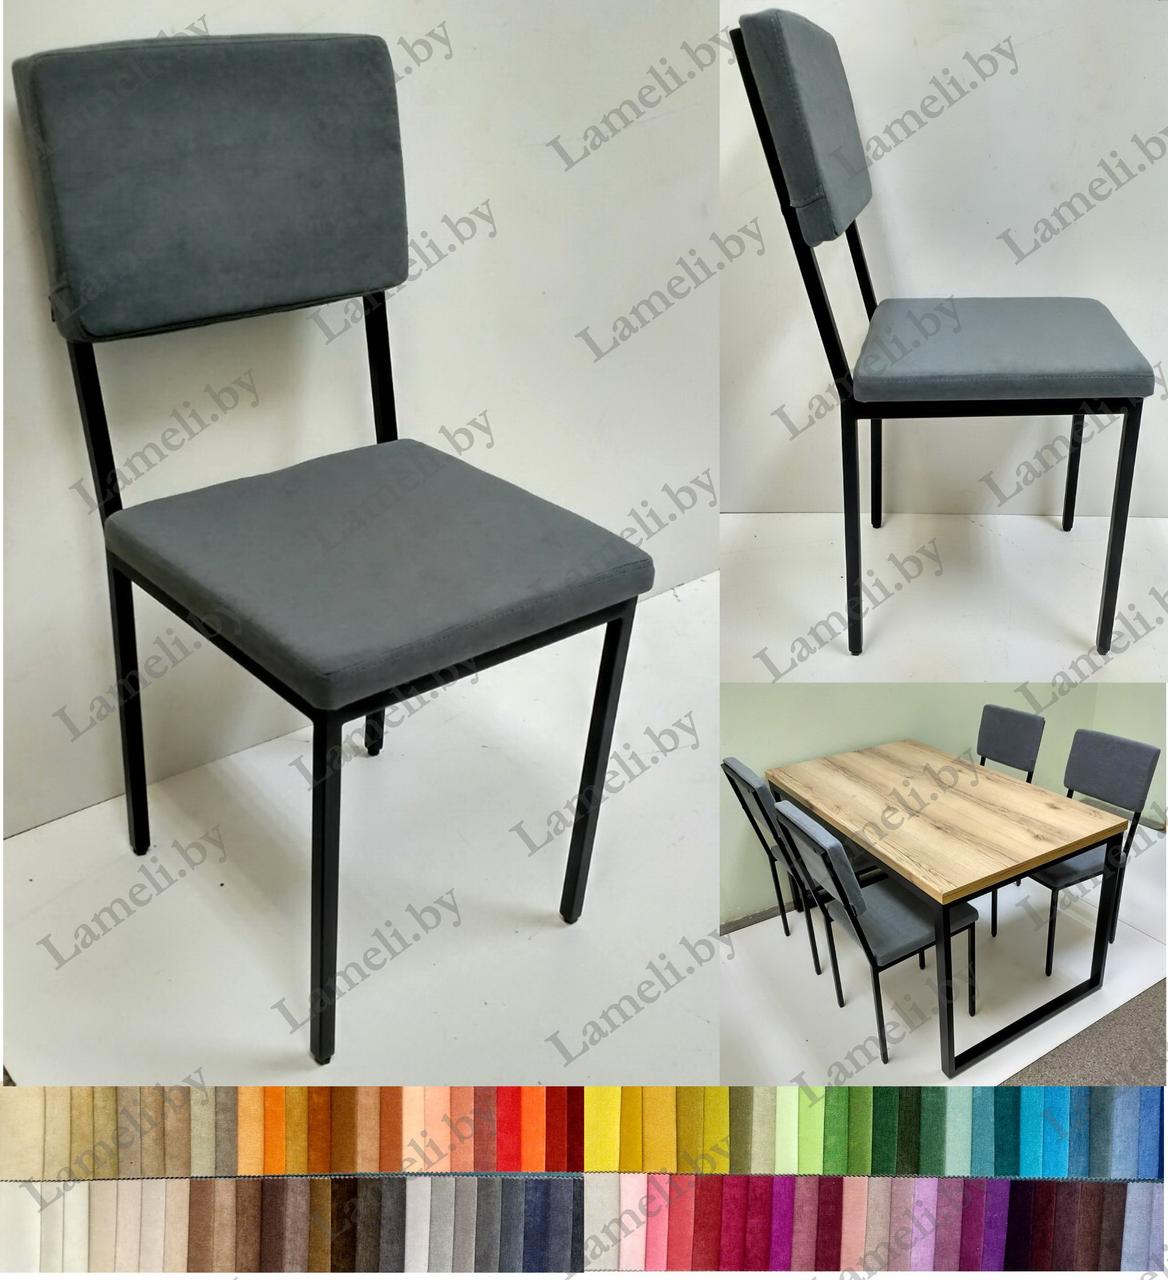 Кухонный обеденный стул на металлокаркасе Ретро М с выбором цвета и размера, фото 1